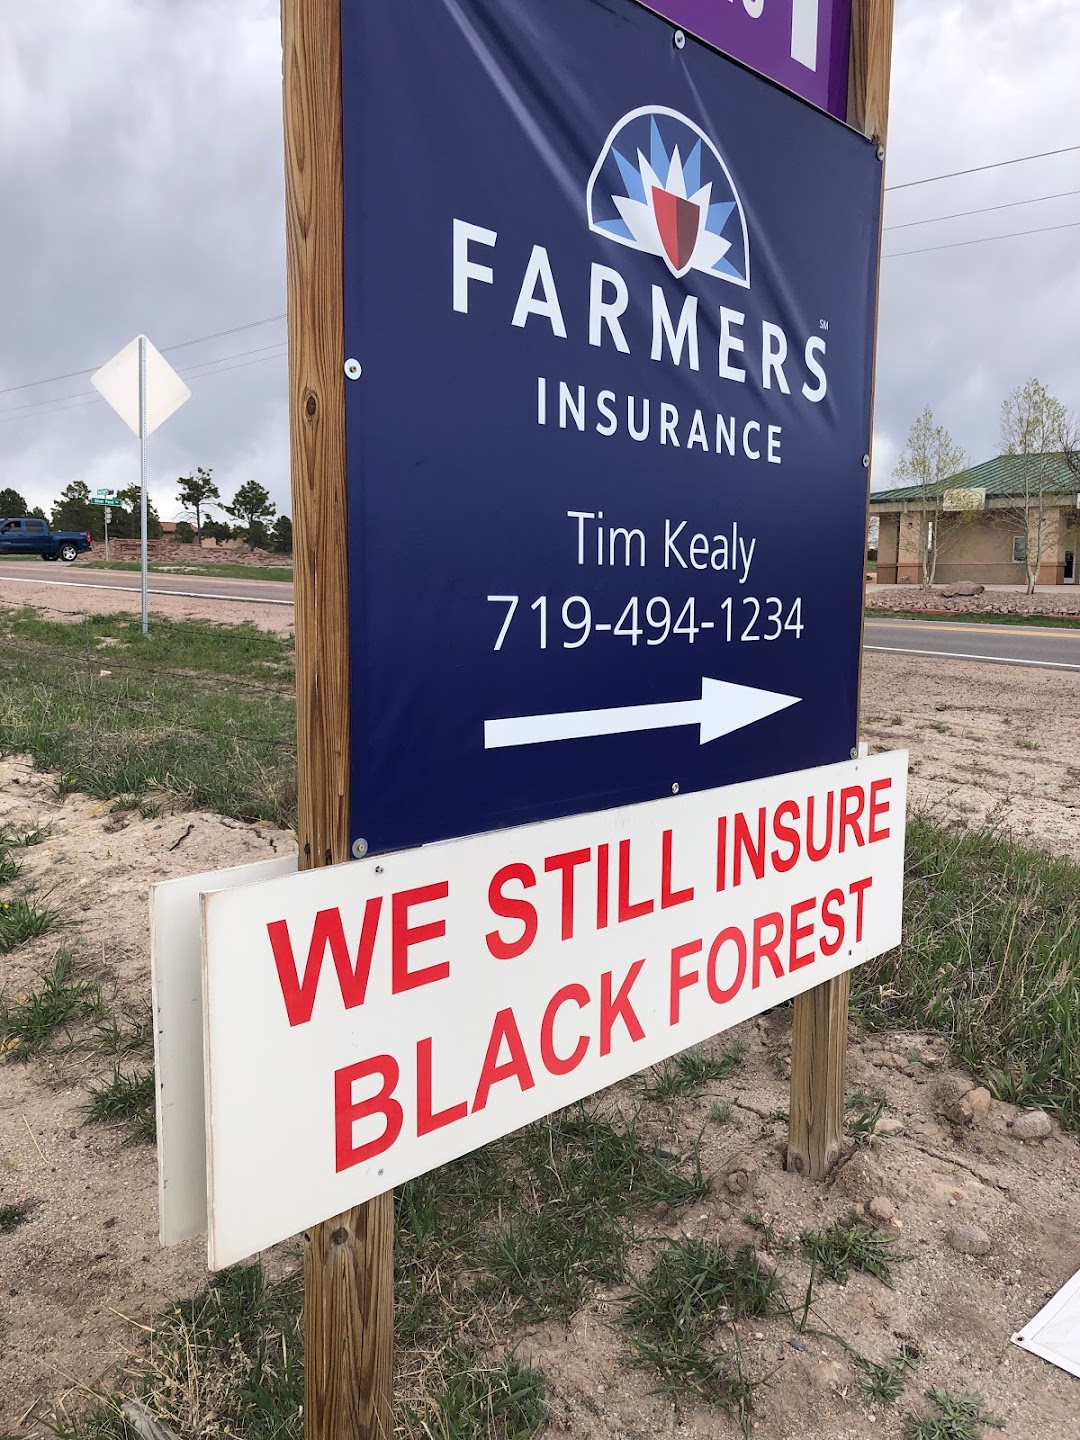 Tim Kealy - Farmers Insurance